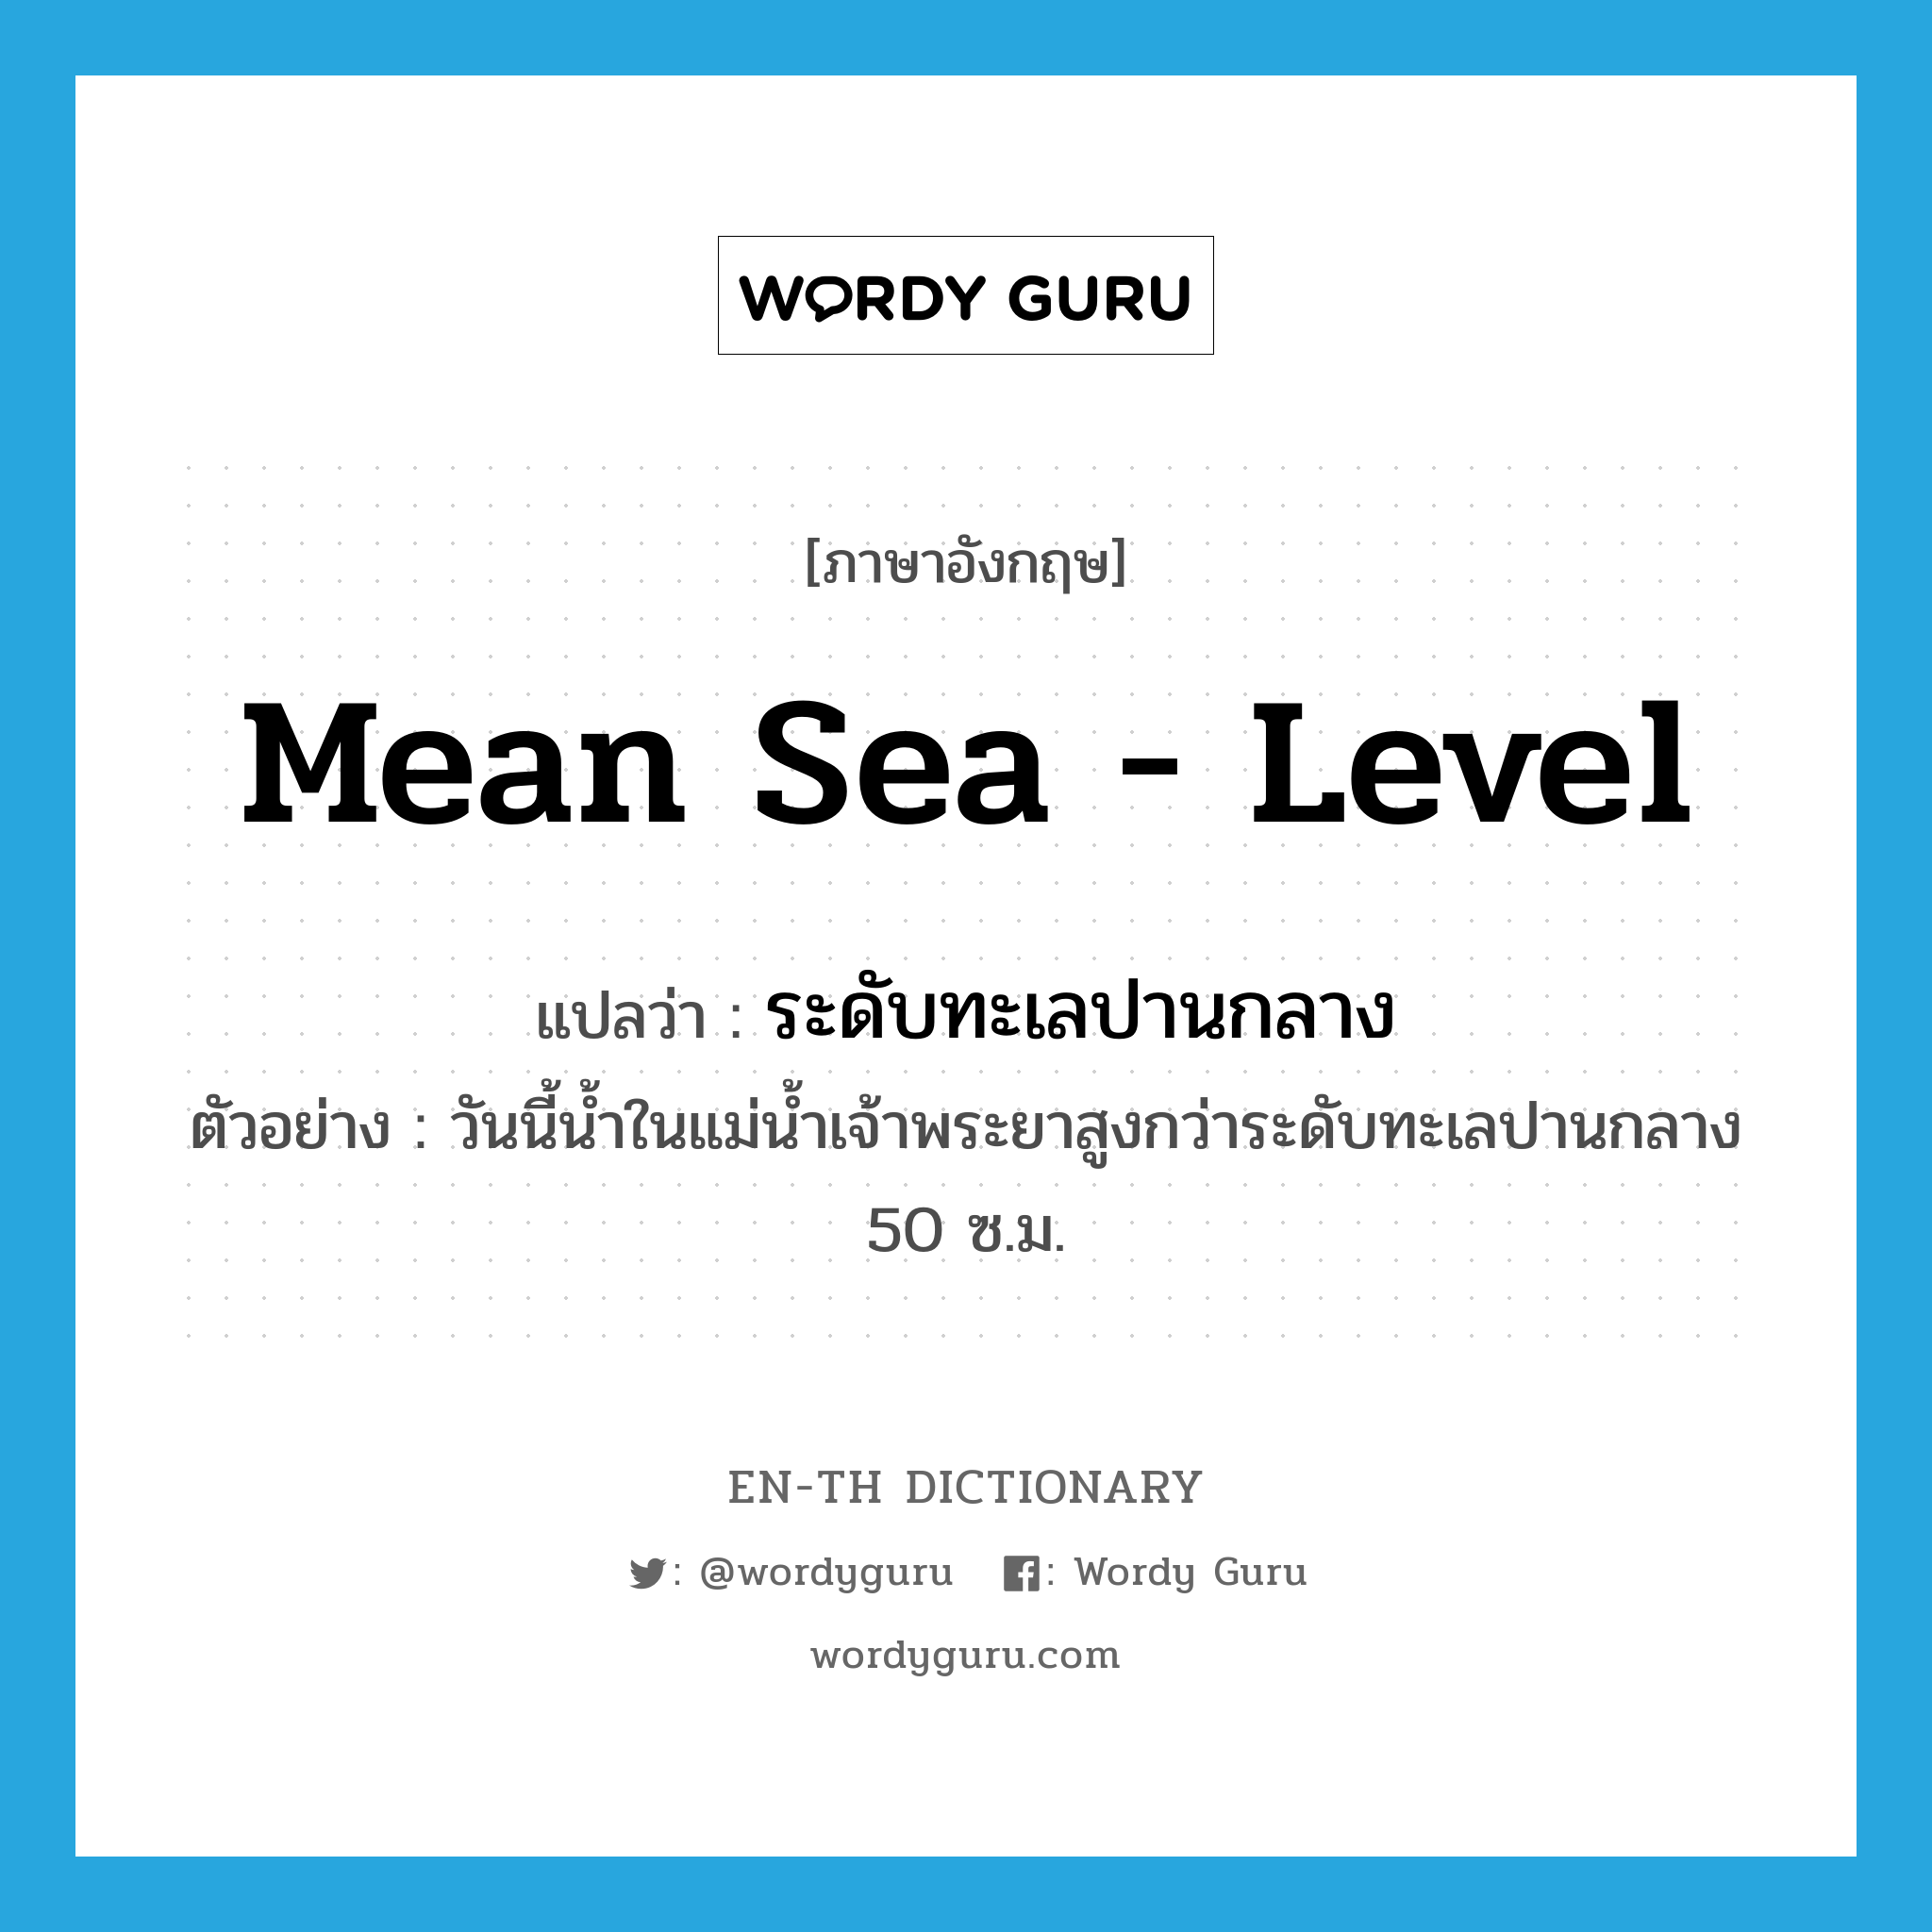 mean sea - level แปลว่า?, คำศัพท์ภาษาอังกฤษ mean sea - level แปลว่า ระดับทะเลปานกลาง ประเภท N ตัวอย่าง วันนี้น้ำในแม่น้ำเจ้าพระยาสูงกว่าระดับทะเลปานกลาง 50 ซ.ม. หมวด N